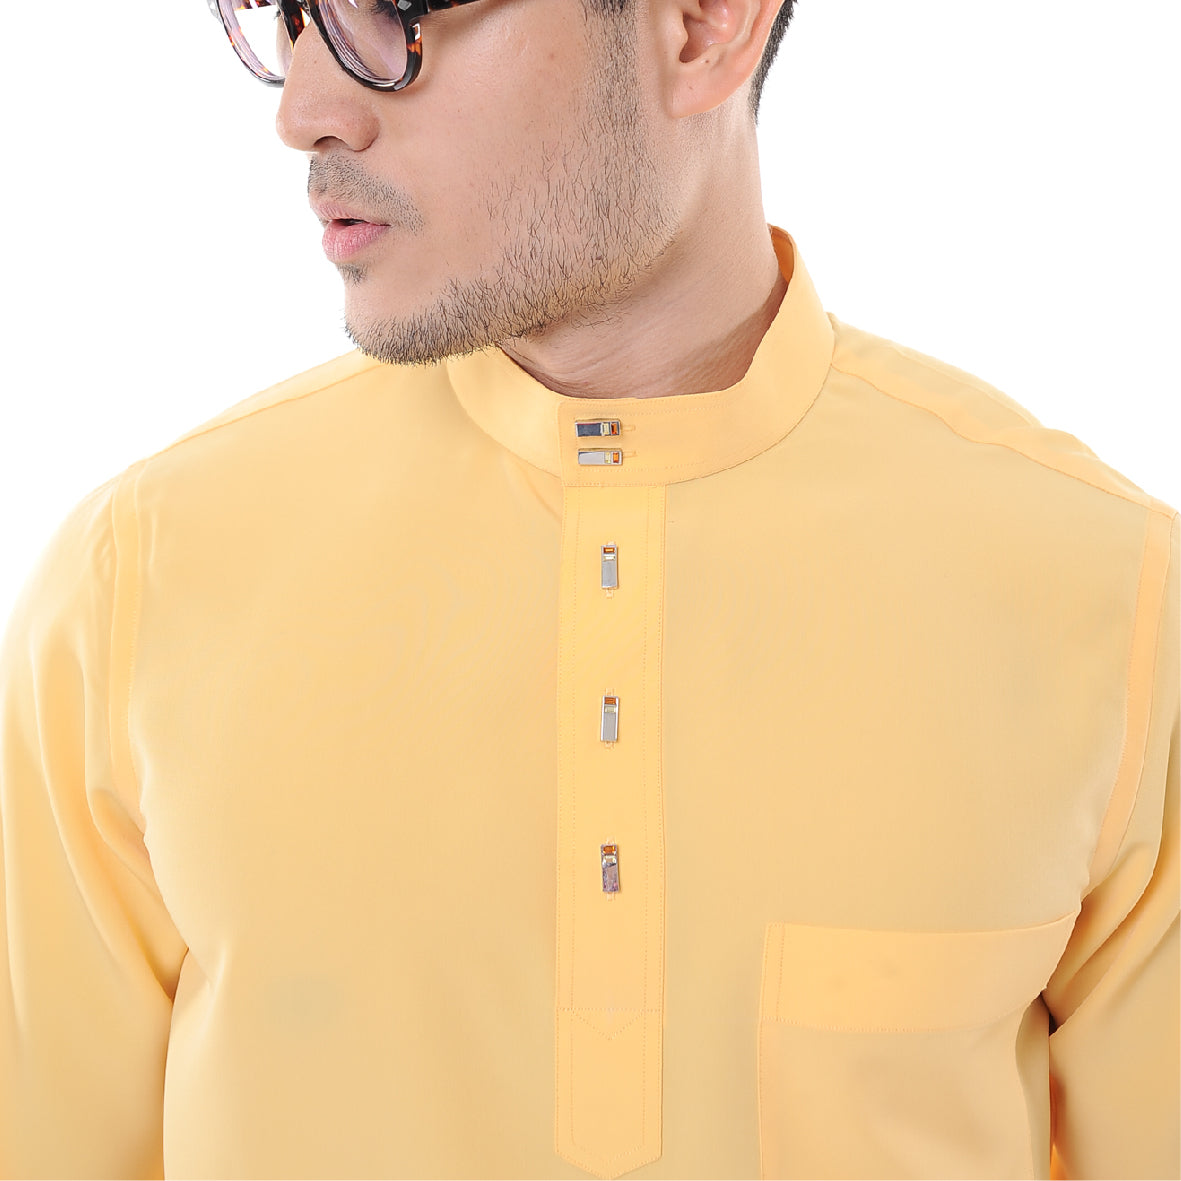 Baju Melayu Japanese Crepe Cekak Musang Yellow